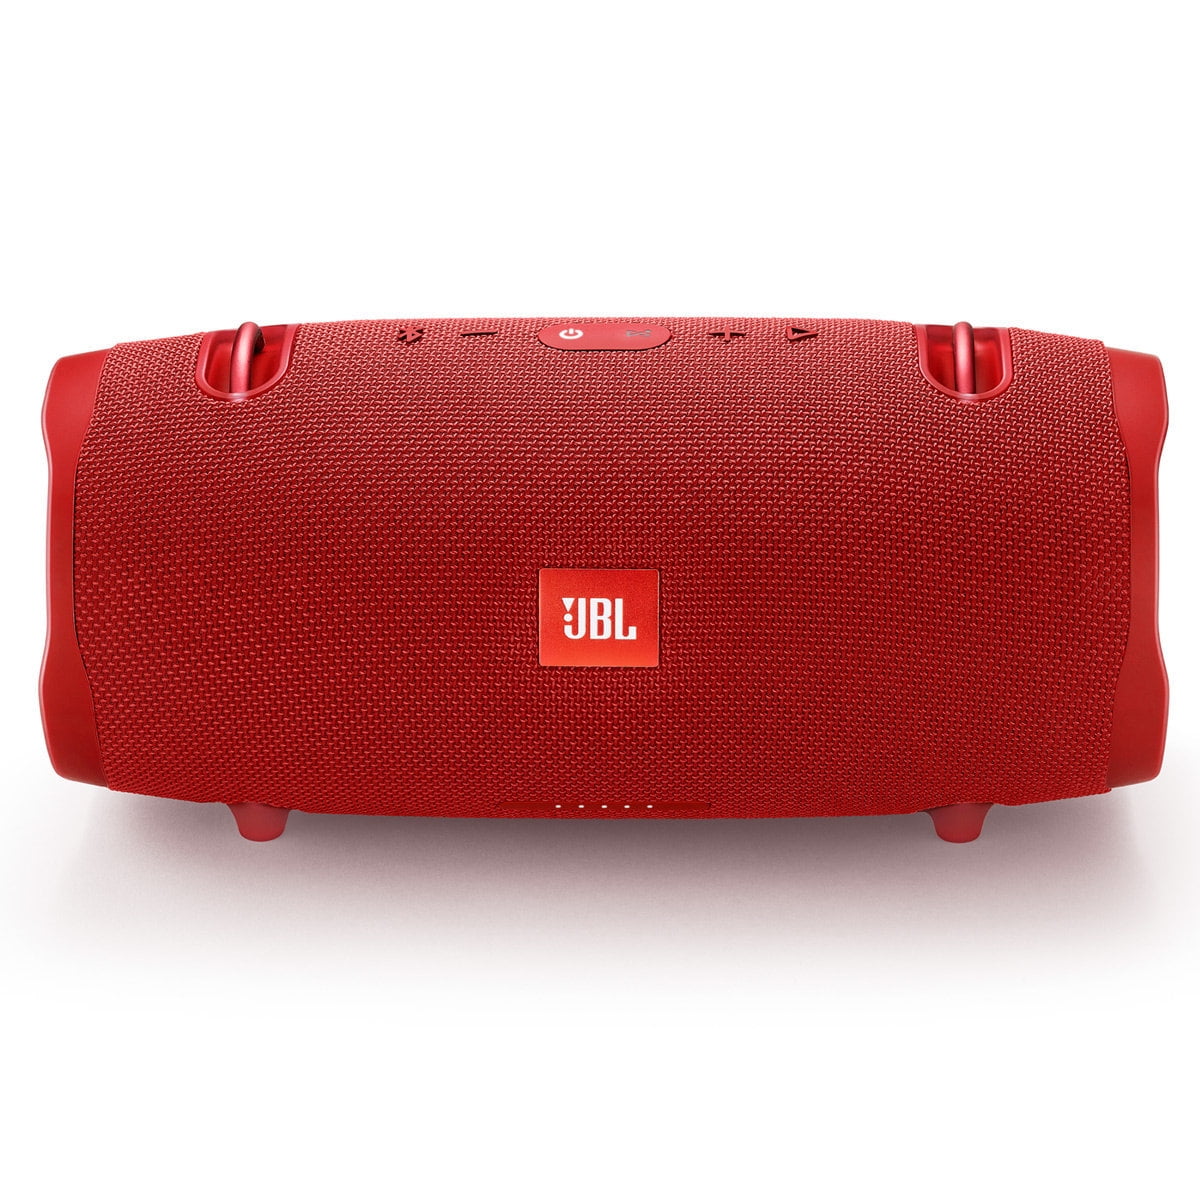 JBL 2 Waterproof Wireless Bluetooth Speaker, Red